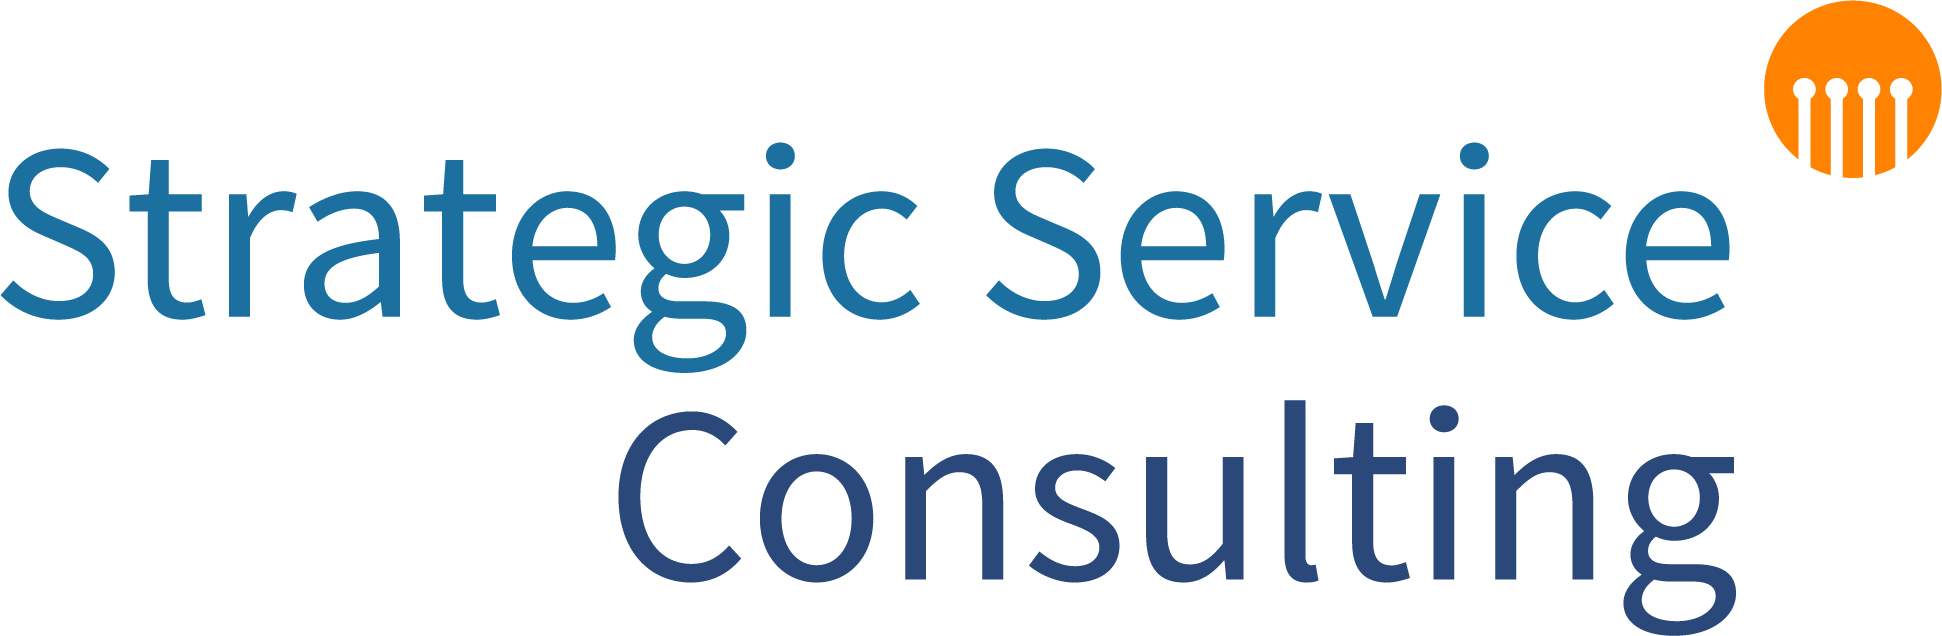 Strategic Service Consulting, Serviceware, Logo.